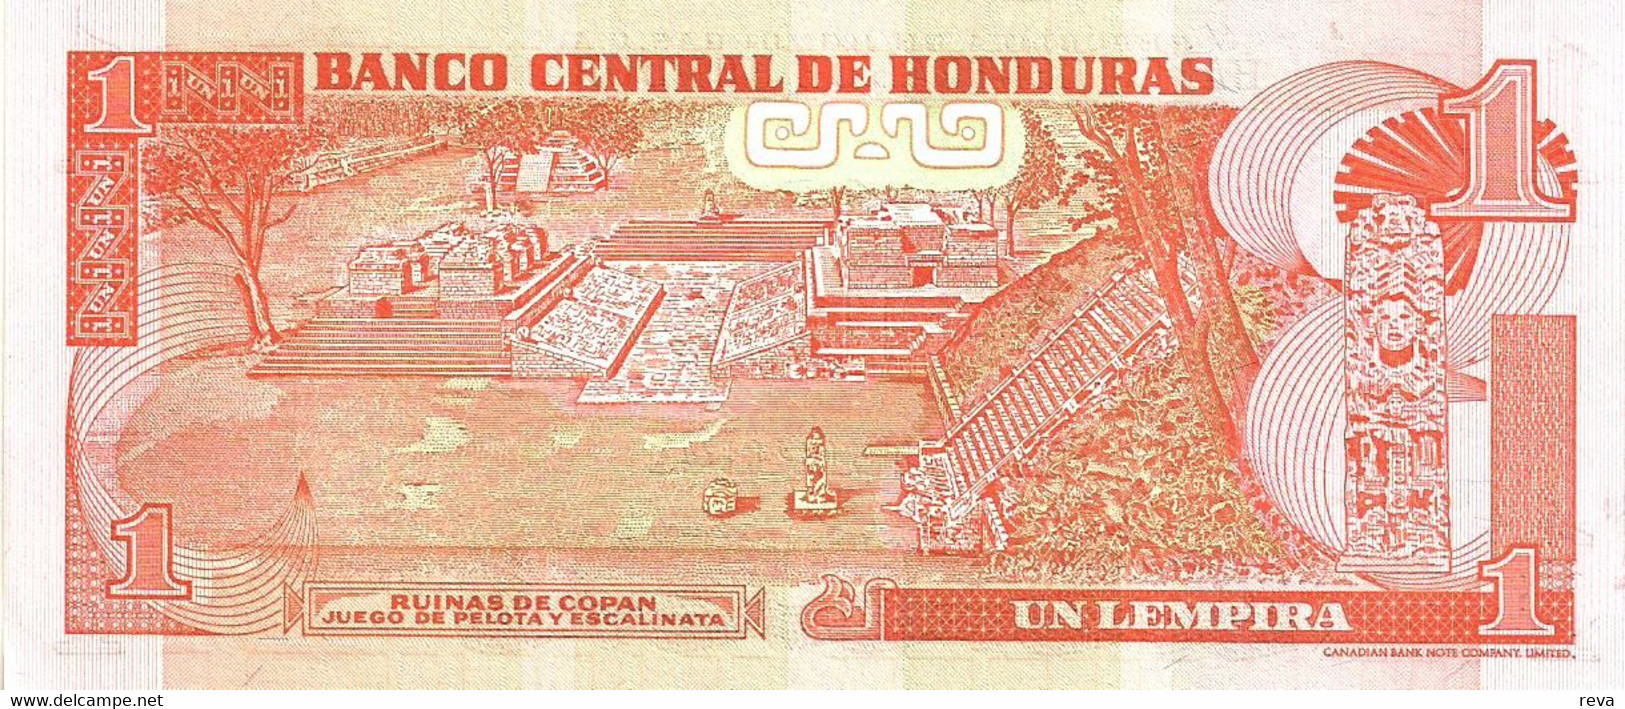 HONDURAS 1 LEMPIRA RED MAN FRONT MAYAN TEMPLE BACK DATED 13-07-2006 P.84a? UNC READ DESCRIPTION !! - Honduras